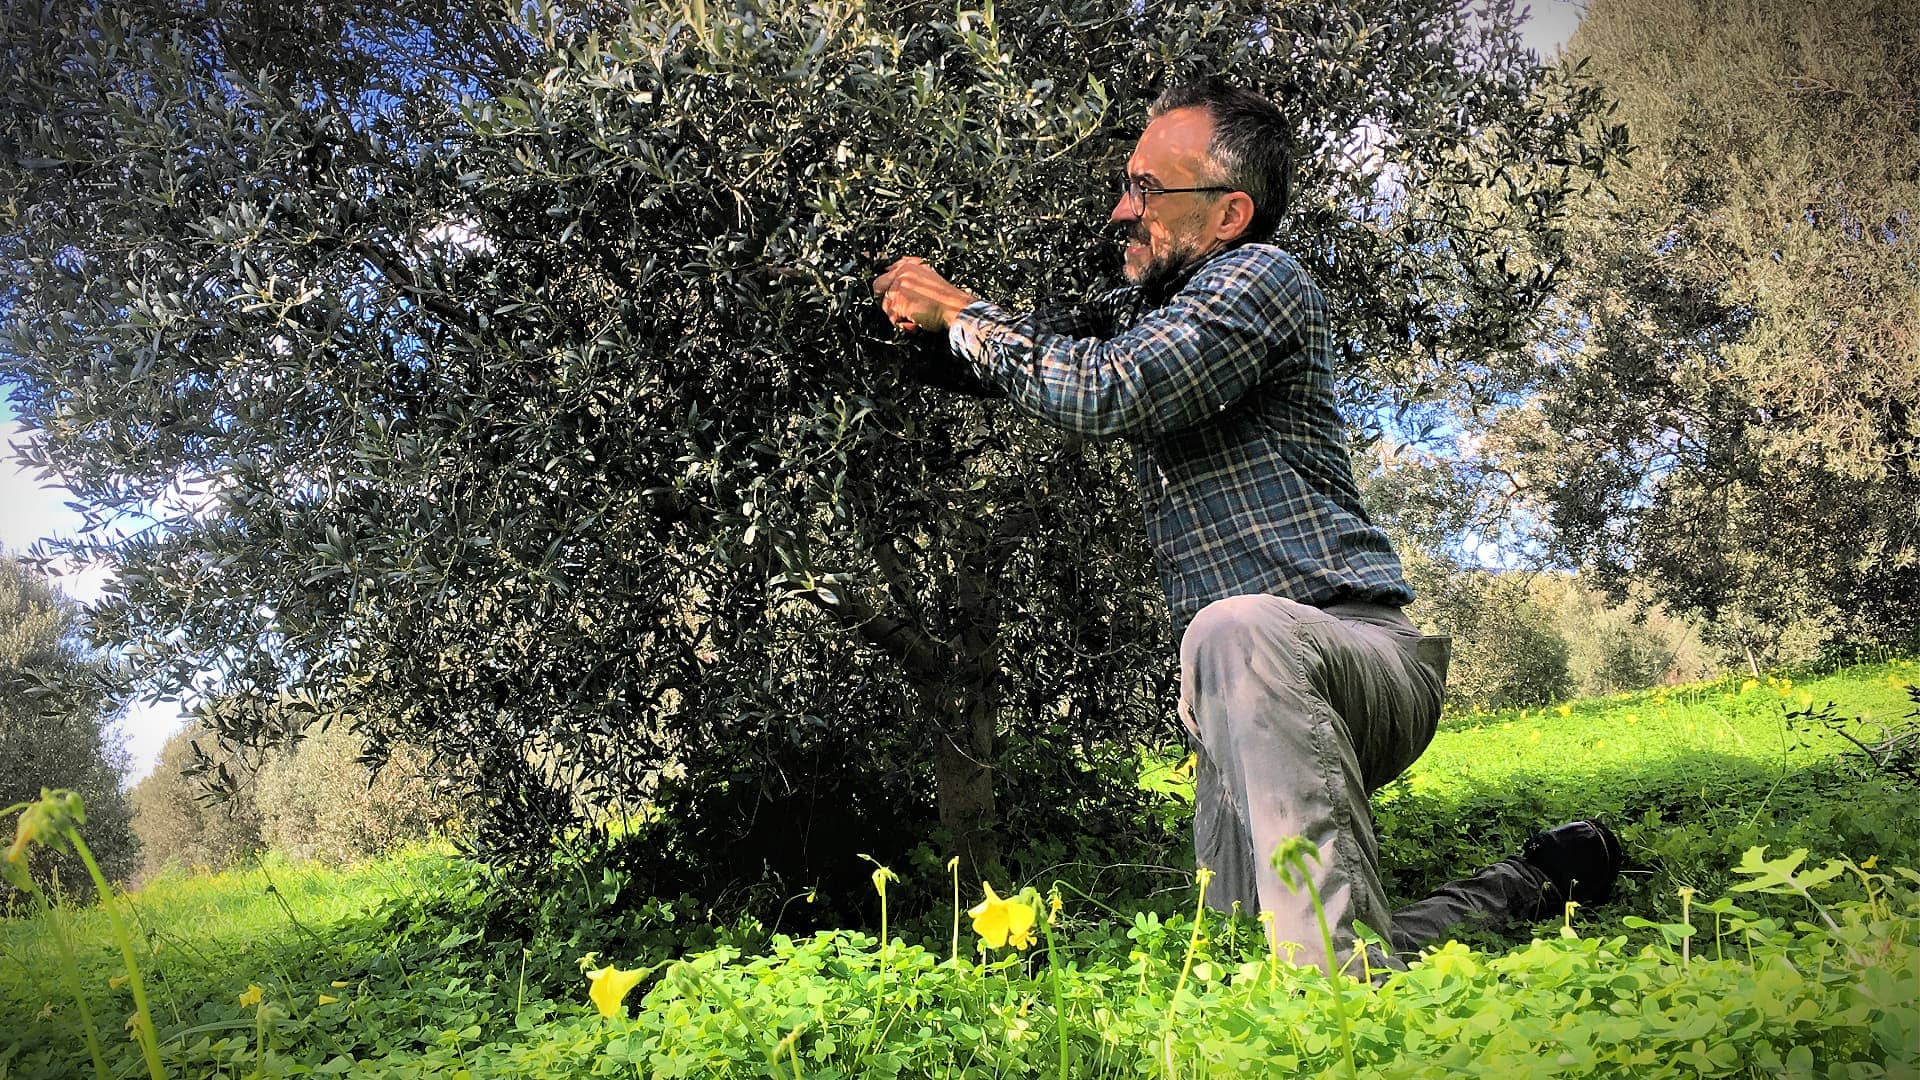 weltproduktionsproduzenten-express-alarm-in-neuesten-olivenölzeiten-umfrage-olivenölzeiten